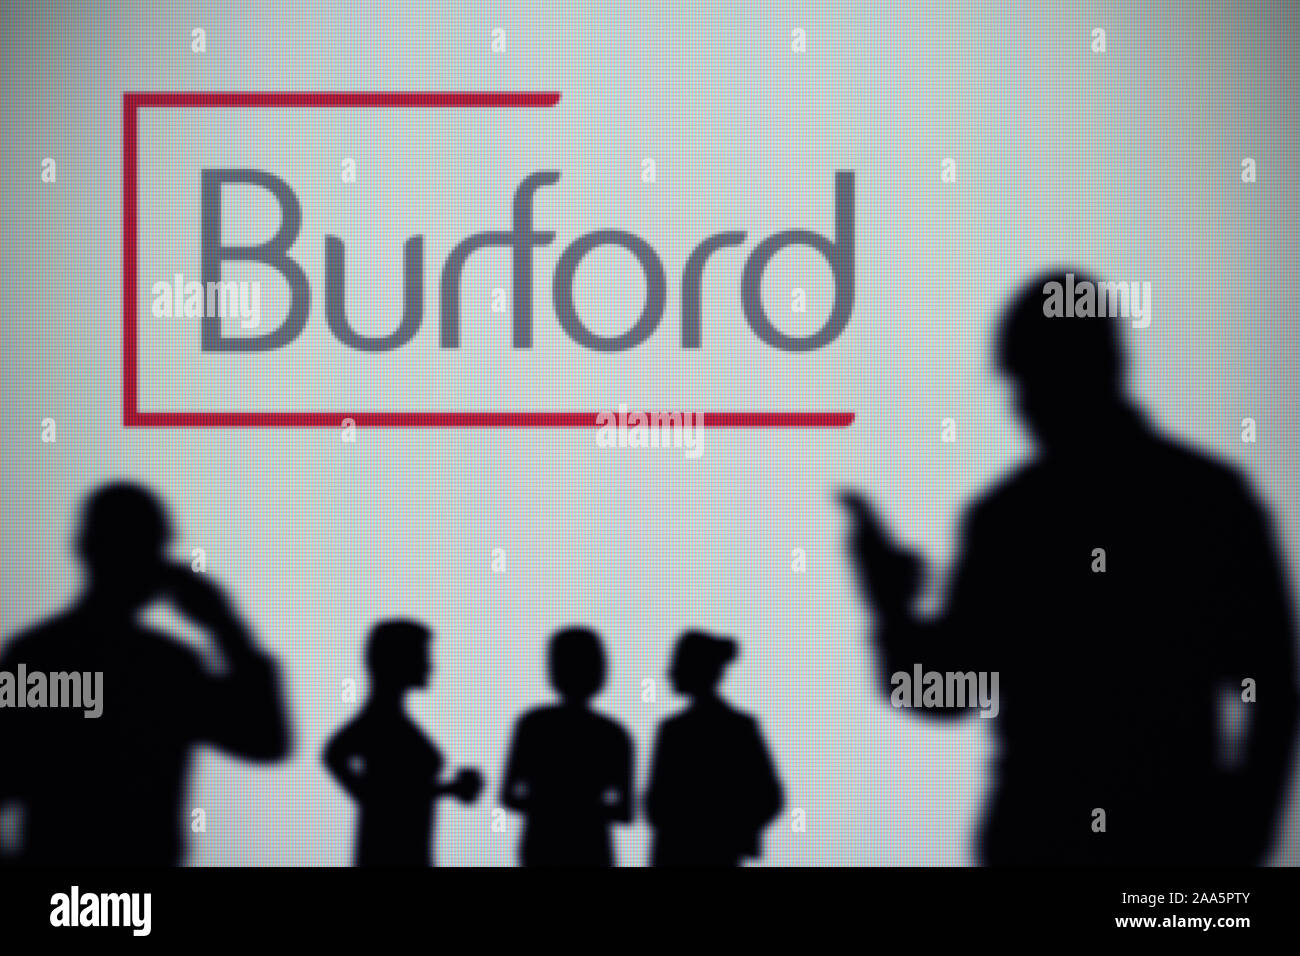 Le capital de Burford logo est visible sur un écran LED à l'arrière-plan tandis qu'une silhouette personne utilise un smartphone (usage éditorial uniquement) Banque D'Images